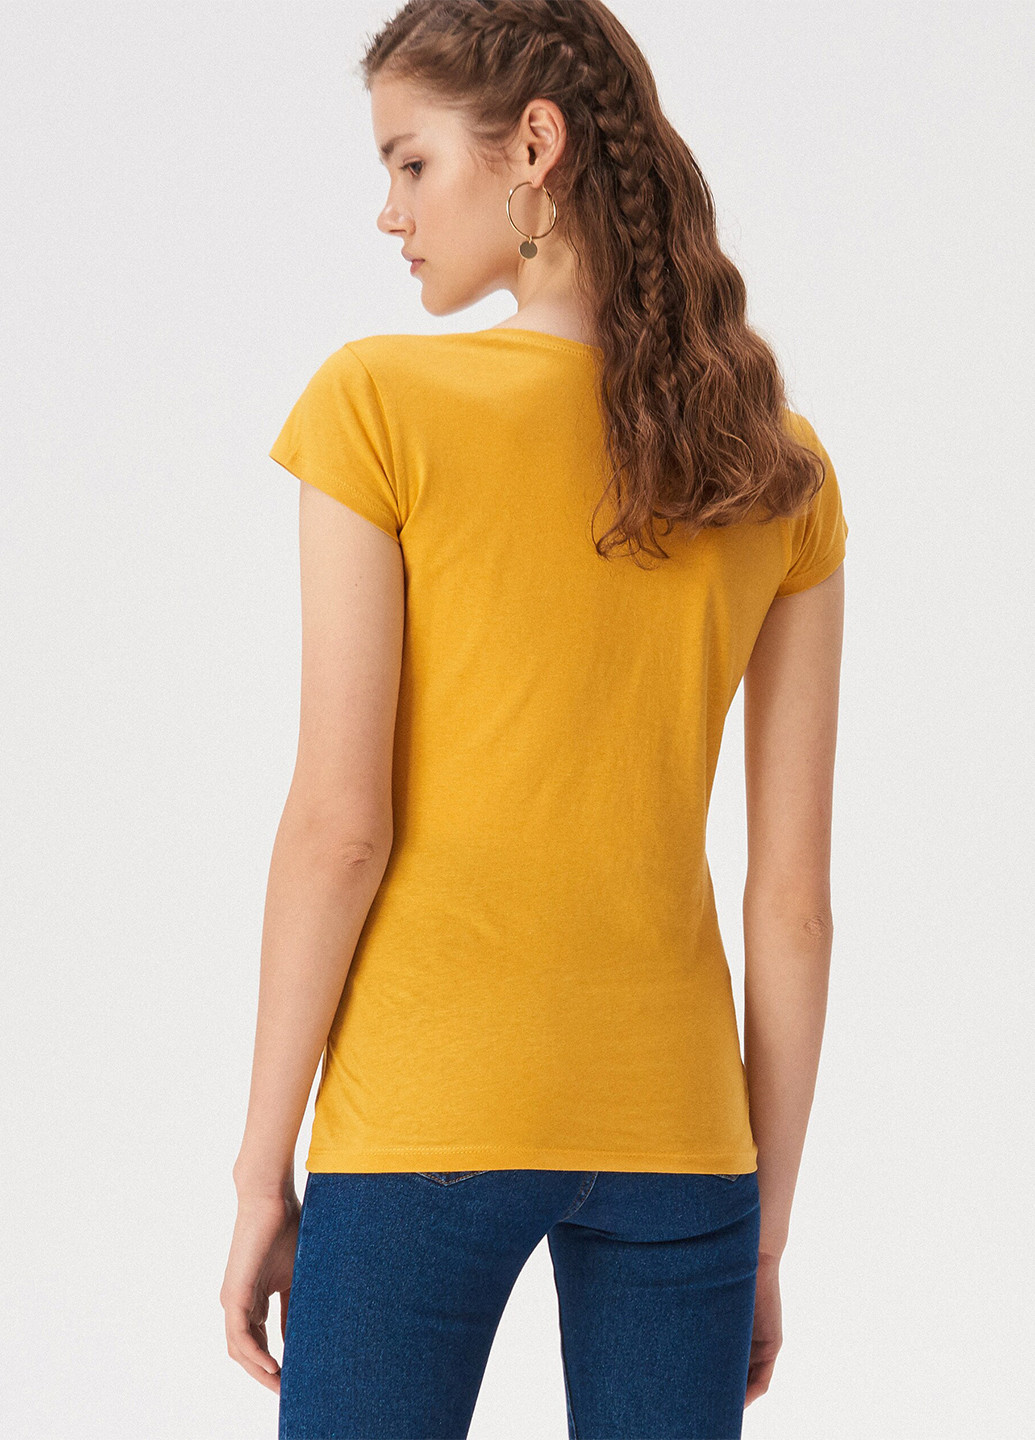 Жовта літня футболка Sinsay